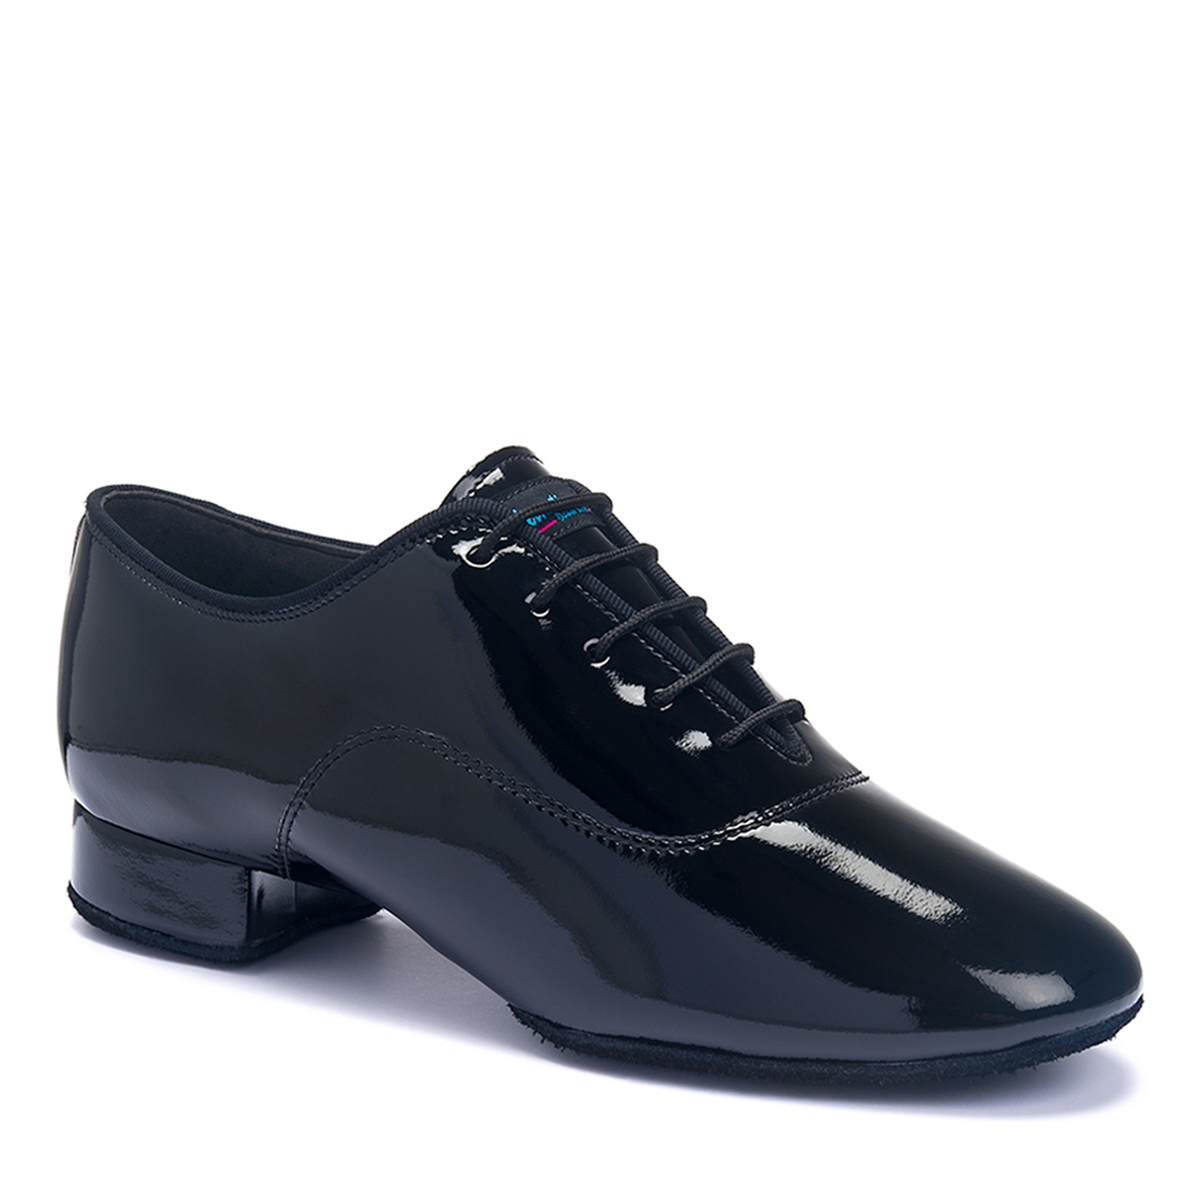 Style IDS Tango Black Patent - Men's Dance Shoes